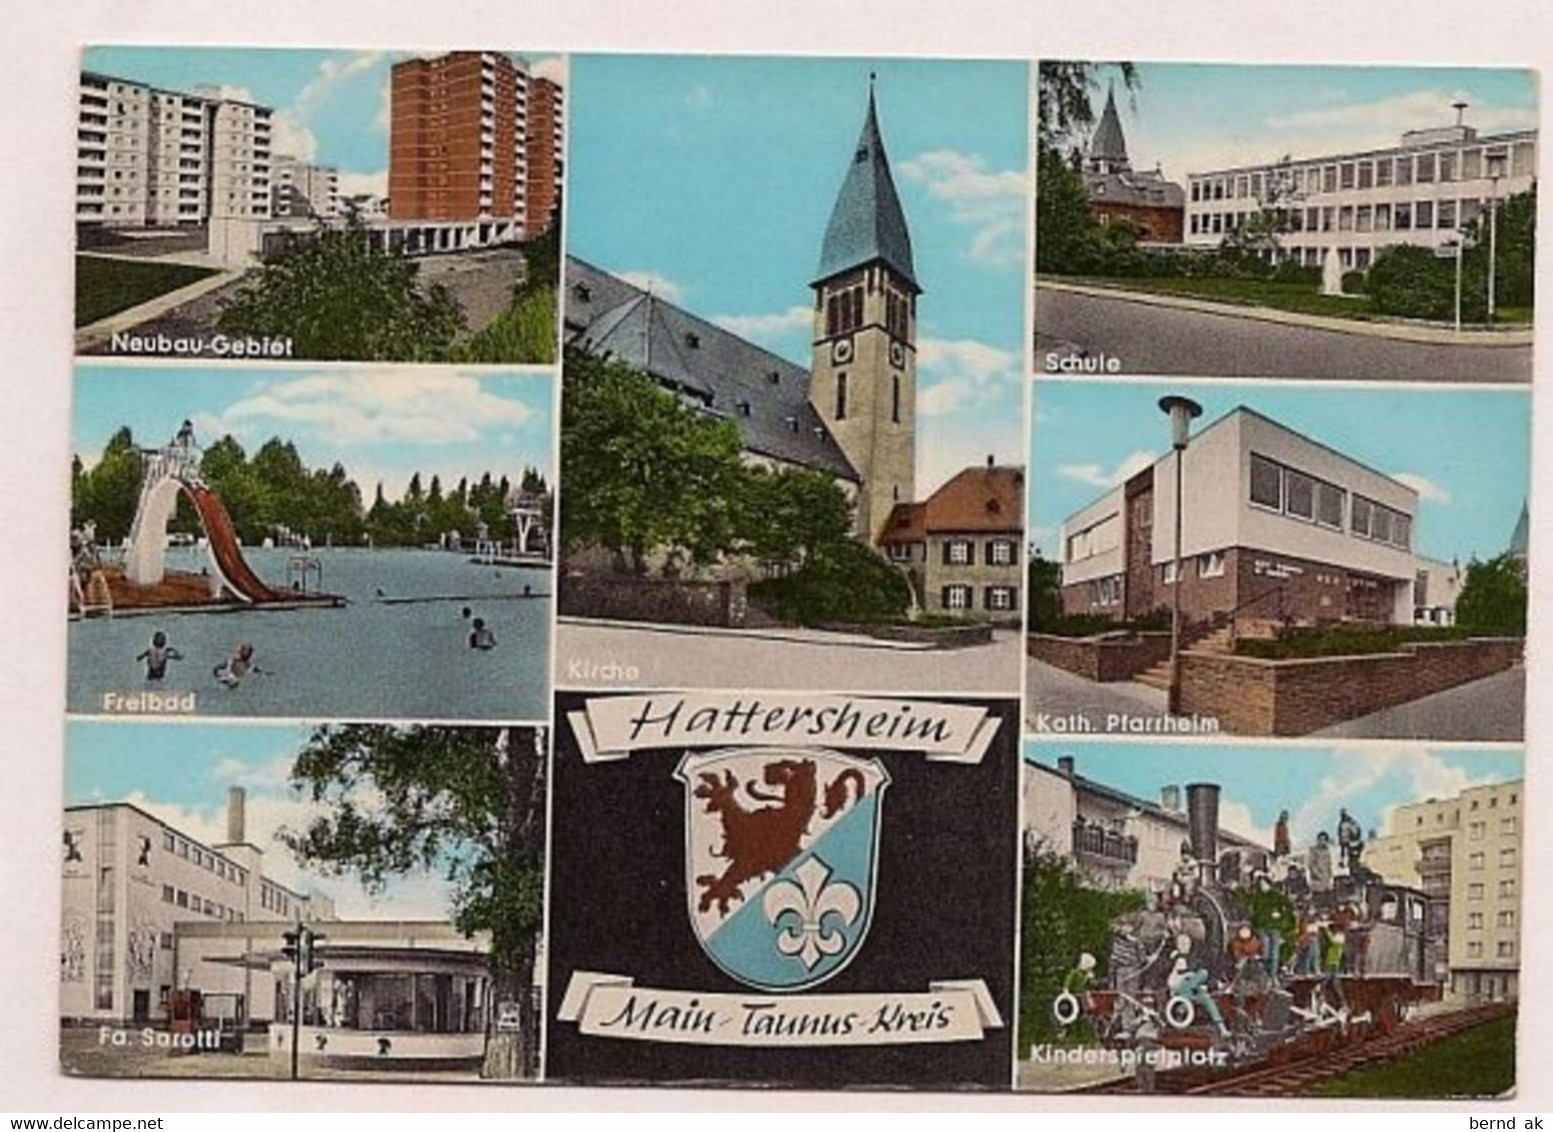 BRD - AK : Hattersheim / Freibad, Kirche, Pfarramt, Fa. Sarotti - Hattersheim